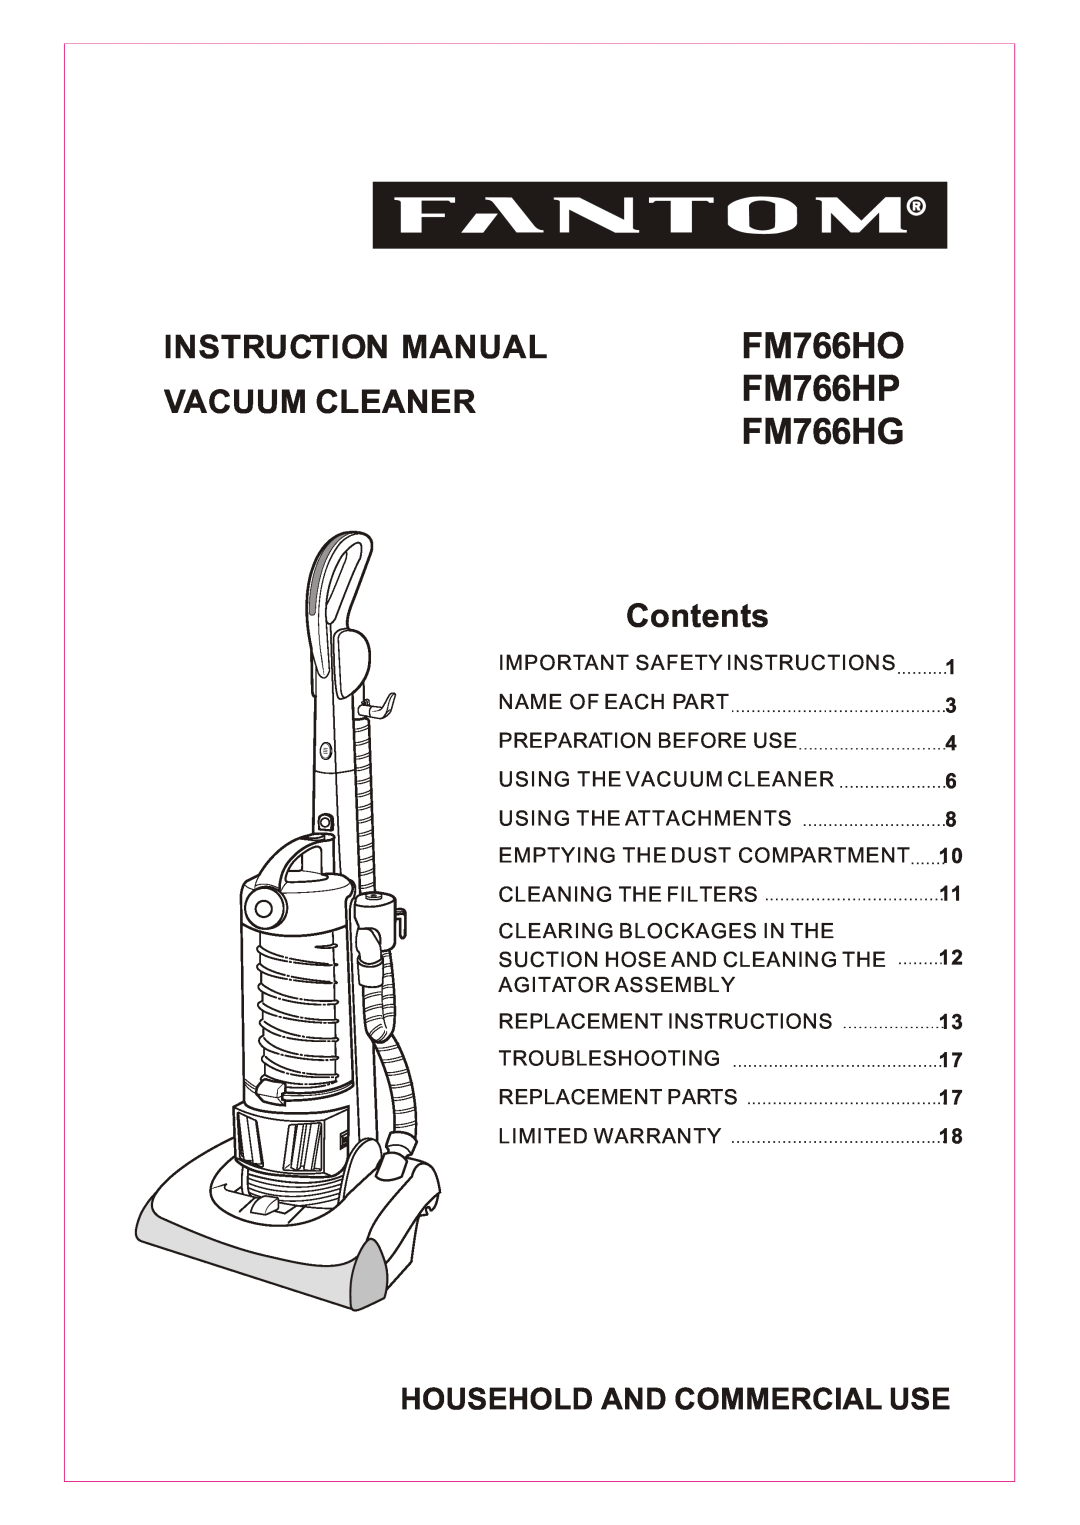 Fantom Vacuum FM766HO instruction manual FM766HP, Instruction Manual, Vacuum Cleaner, Contents, FM766HG 